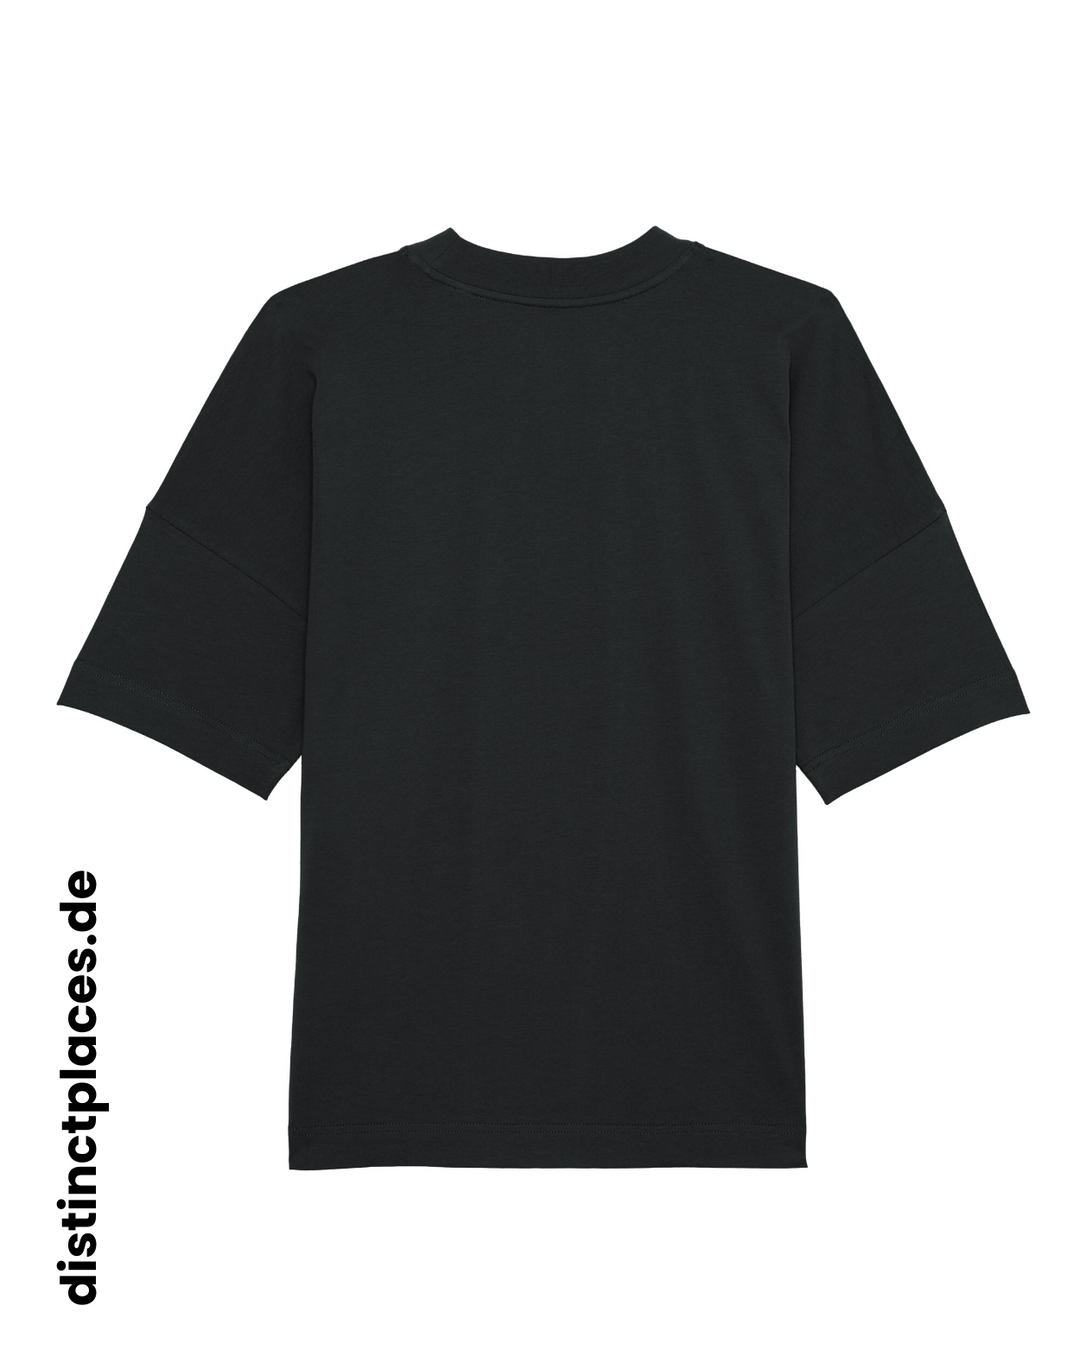 Schwarzes fairtrade, vegan und bio-baumwoll Oversized T-Shirt von hinten mit einem minimalistischem weißen Logo, beziehungsweise Wappen und Schriftzug für Saarland